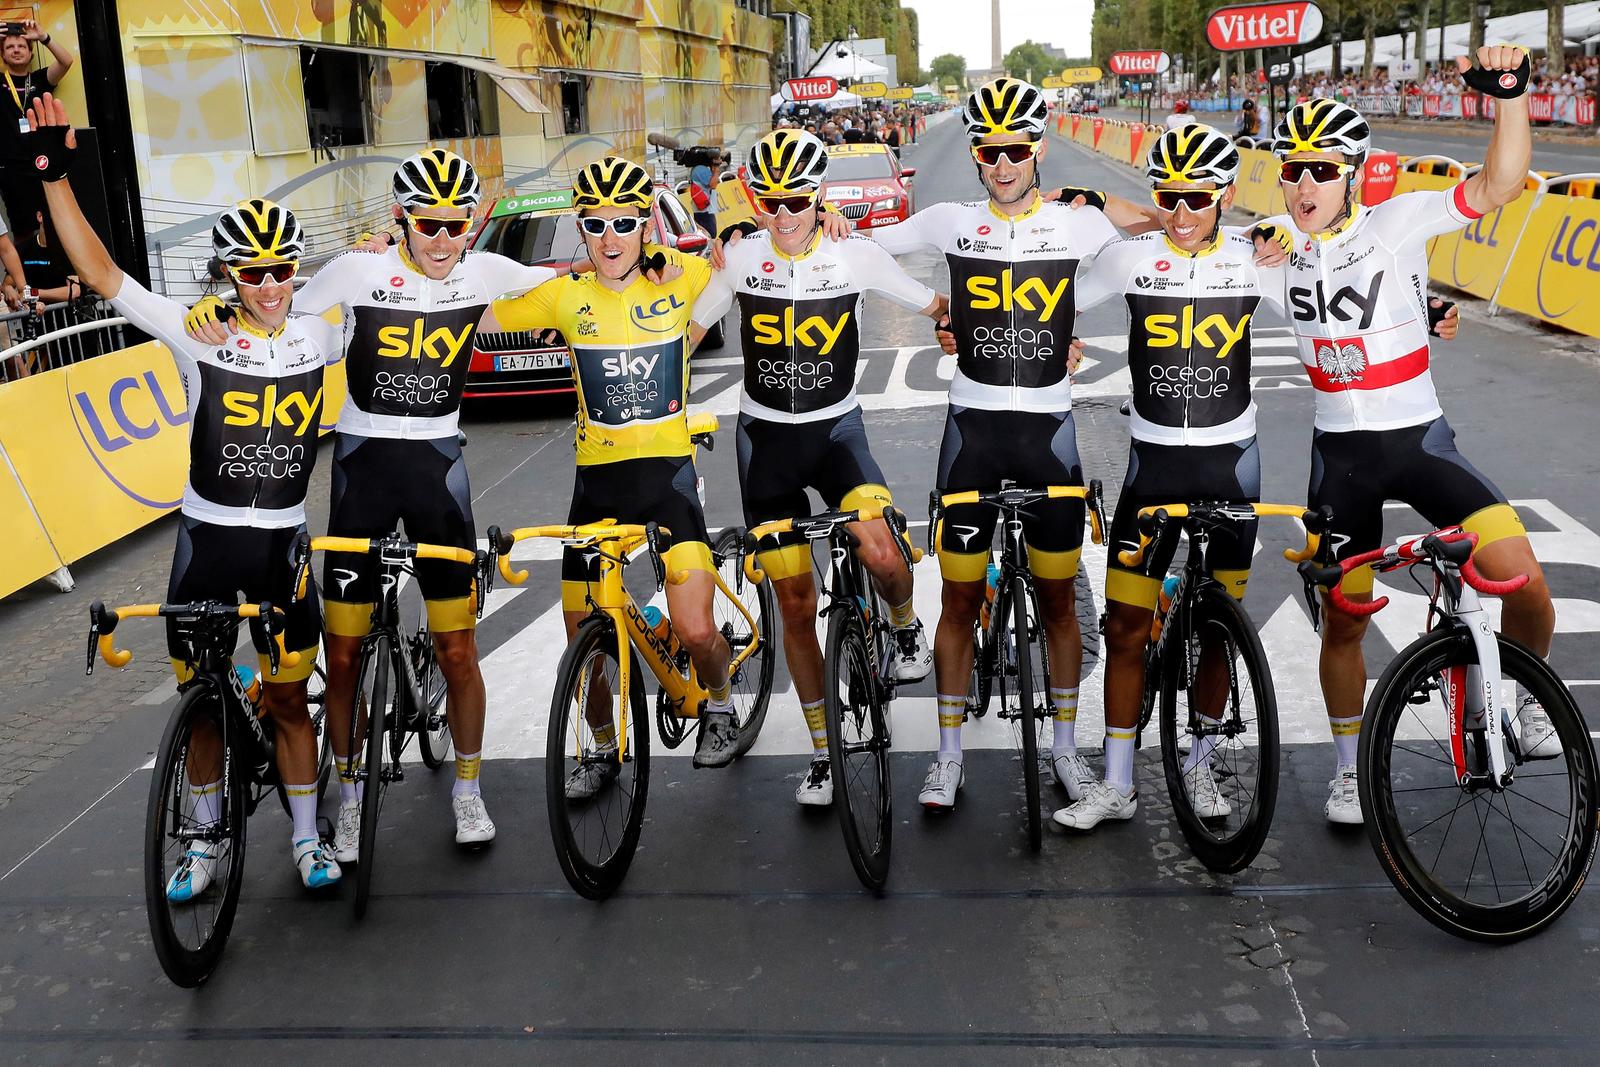 El equipo Sky fue el más dominante en los últimos 10 años, donde ganó 6 veces el Tour de Francia.